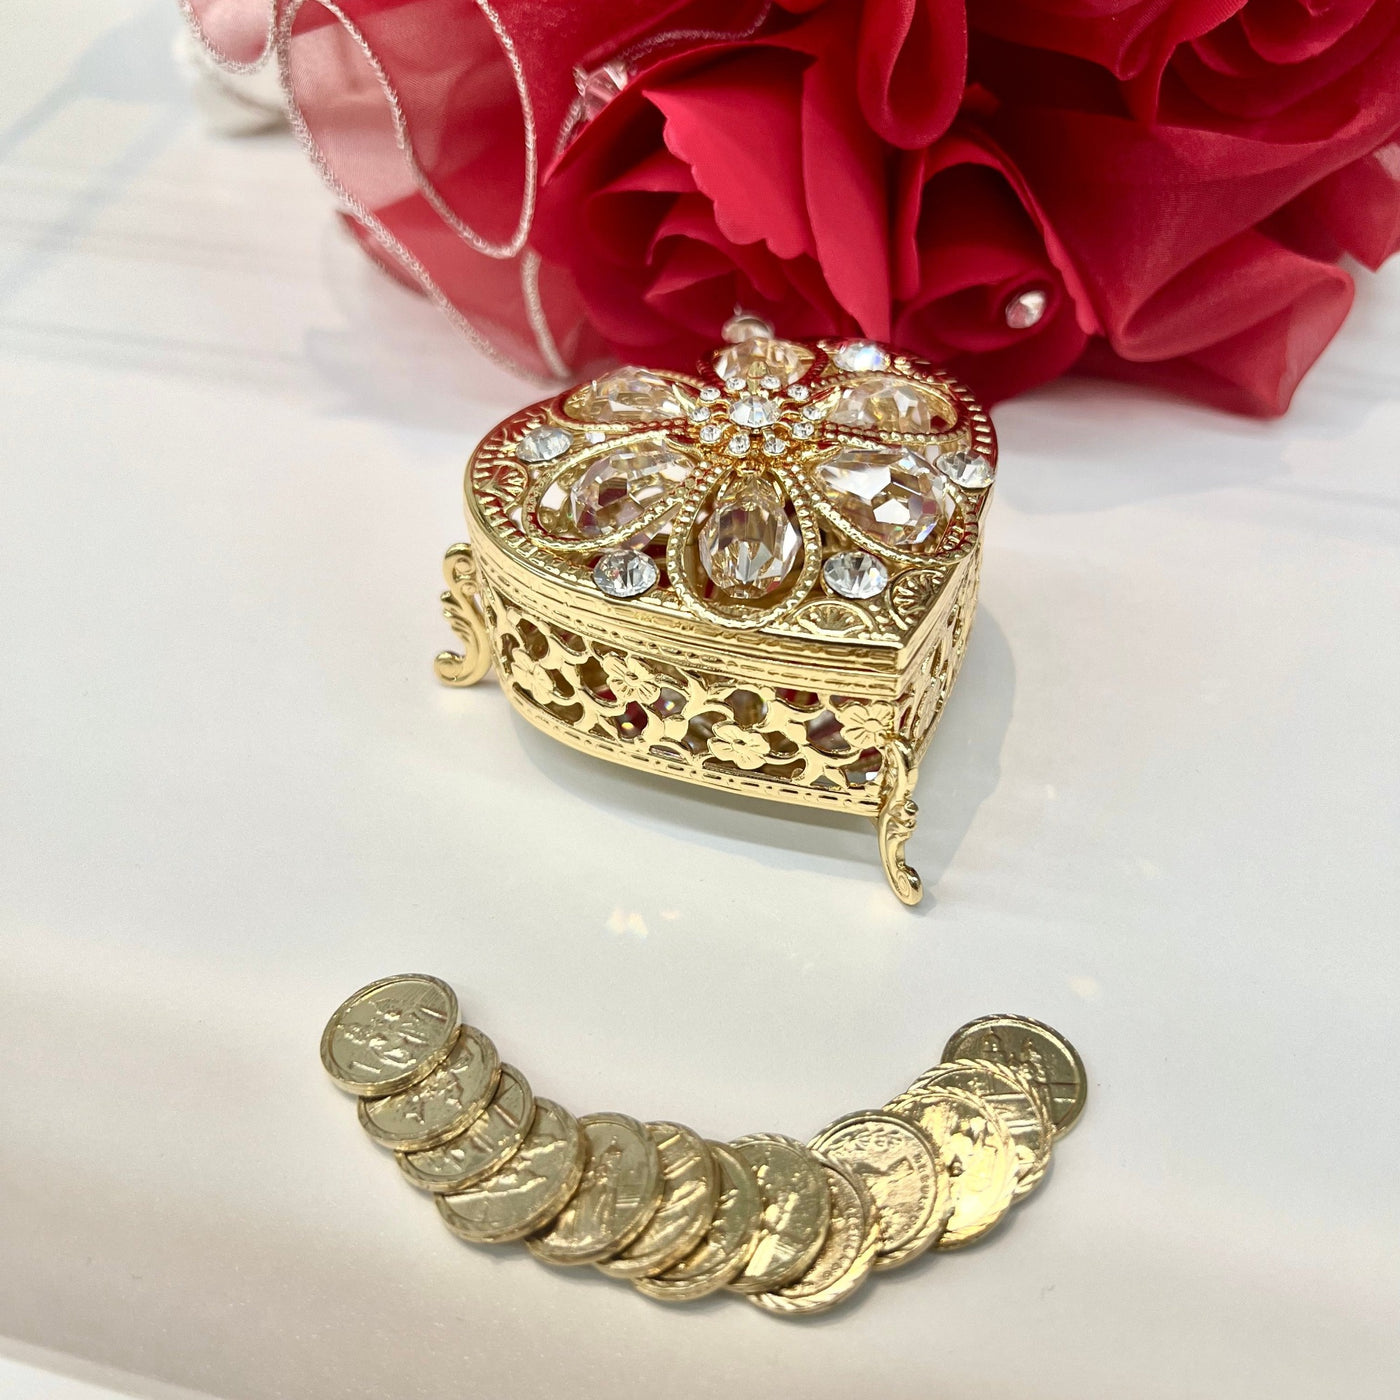 Arras Box and Coins - Crystal Heart -Wedding Coin Ritual (Las Arras Matrimoniales)